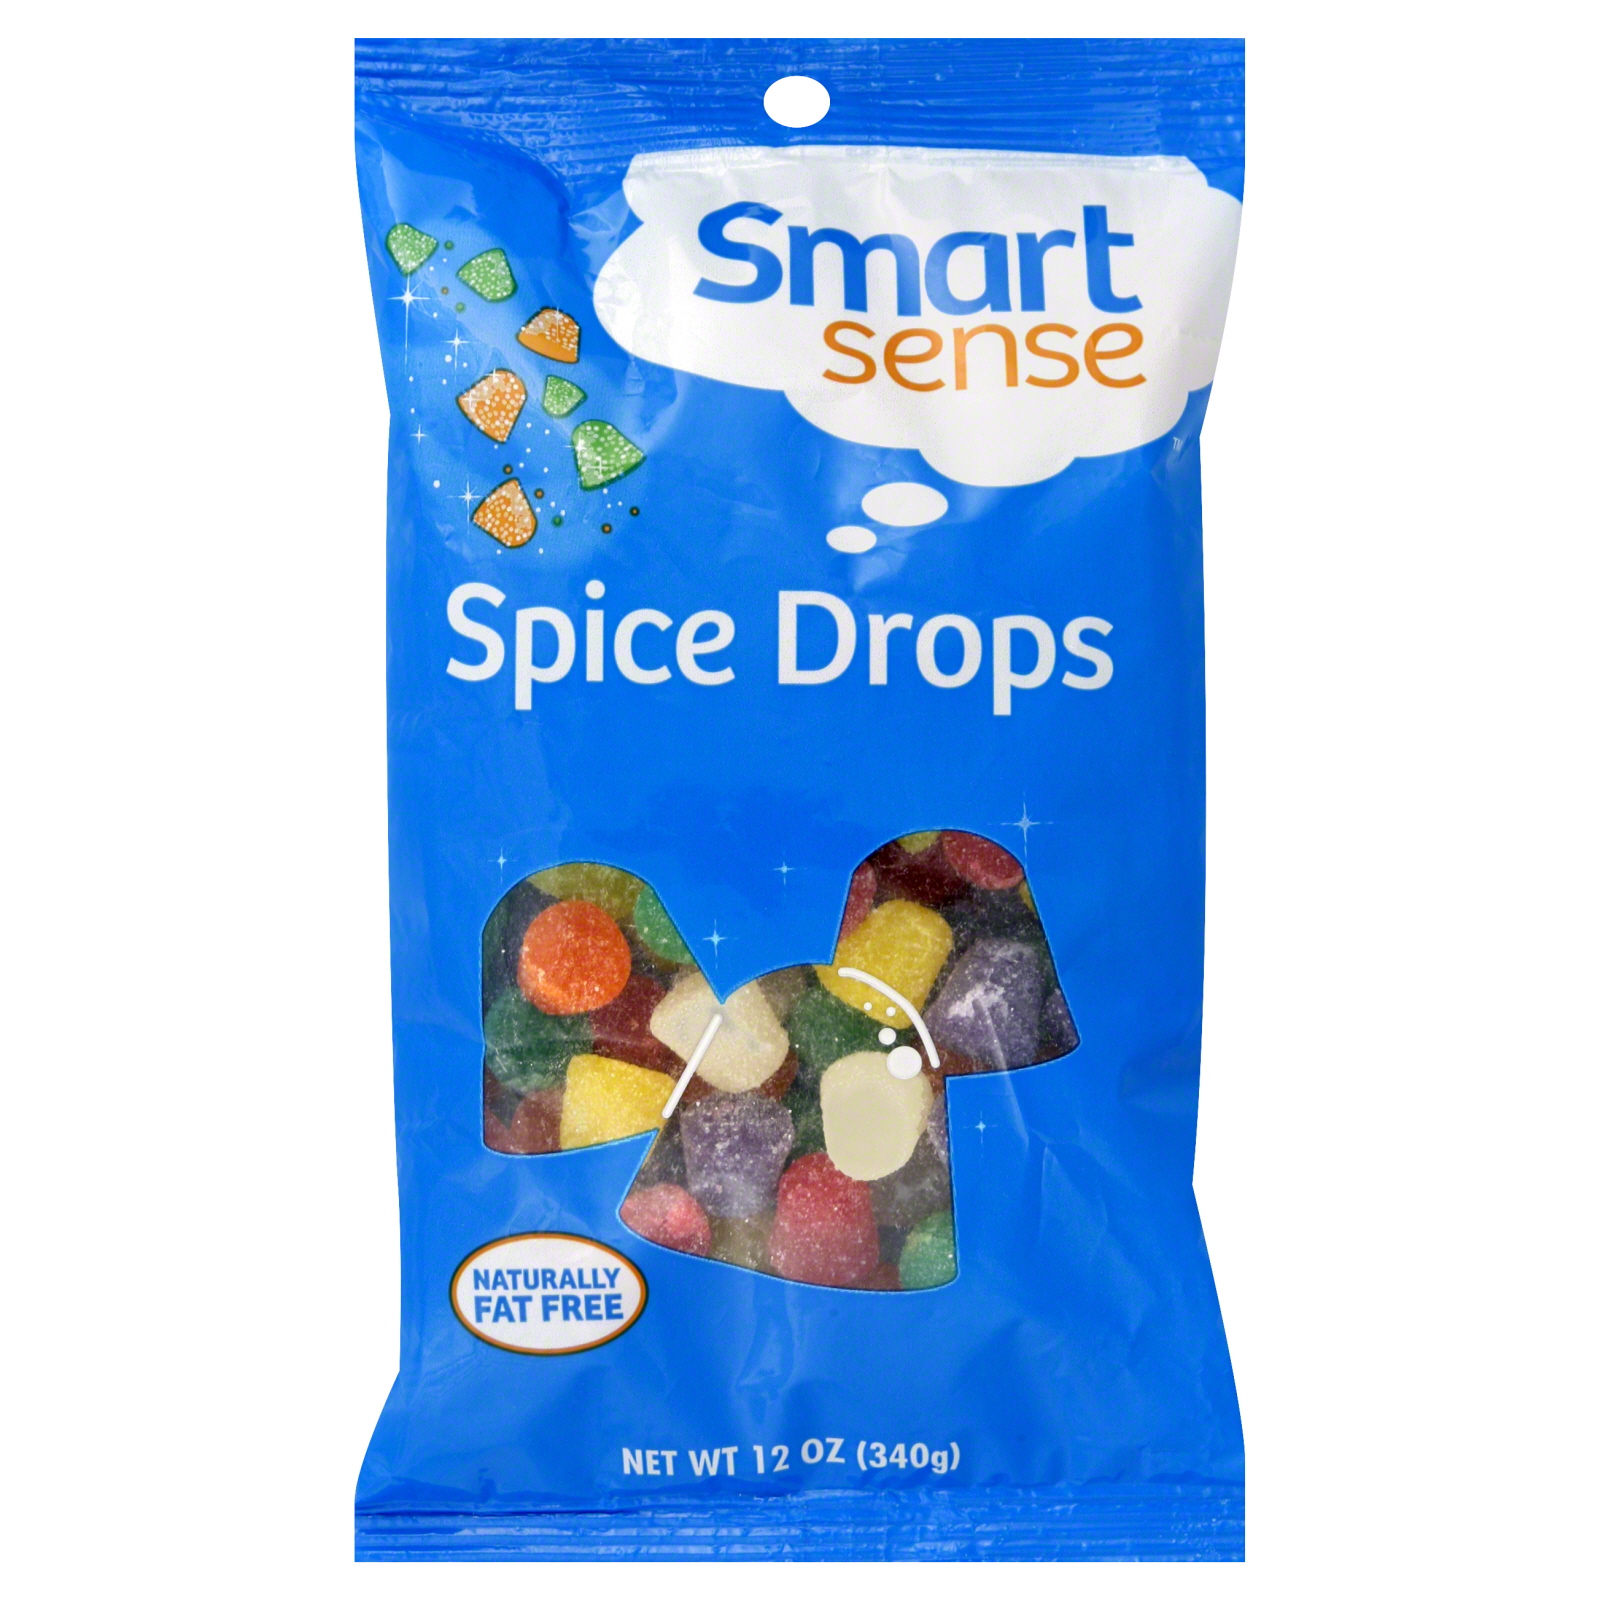 Smart Sense Spice Drops, 12 oz bag